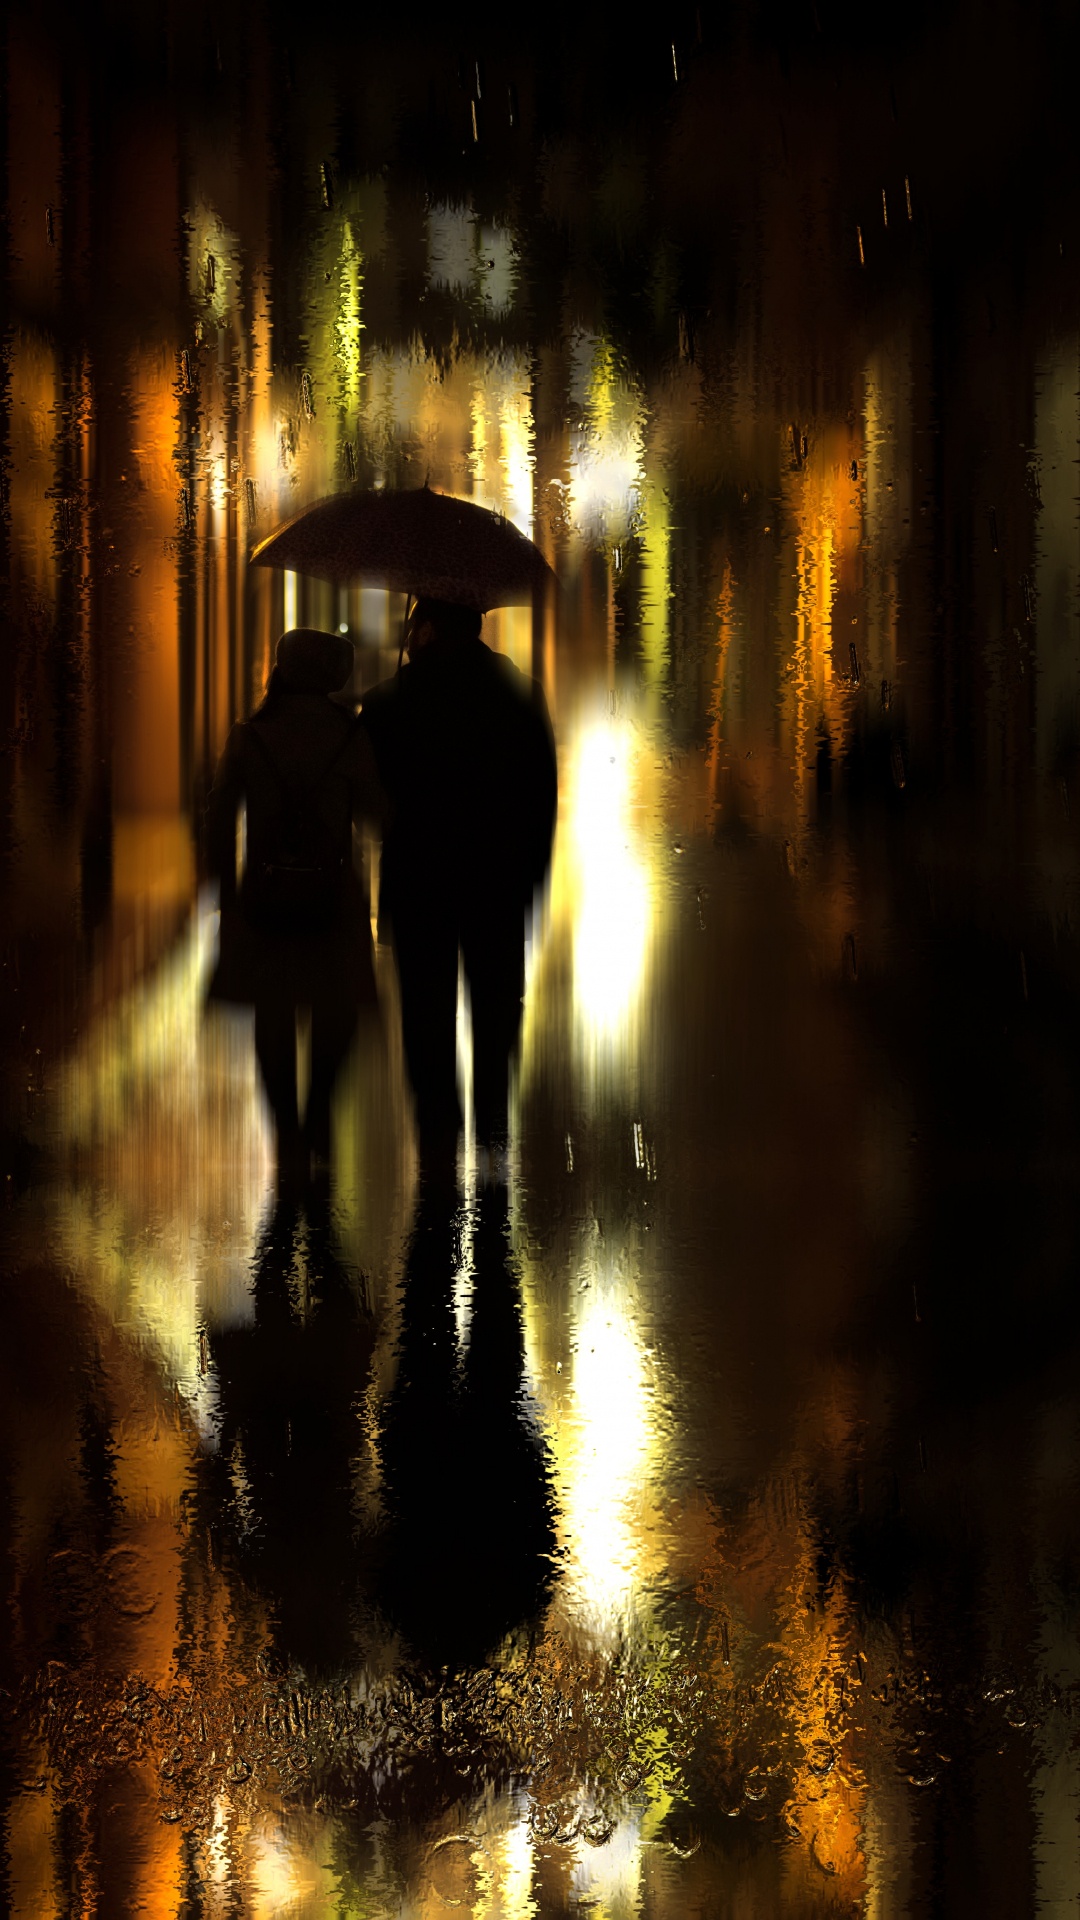 Regen, Reflexion, Nacht, Licht, Abend. Wallpaper in 1080x1920 Resolution